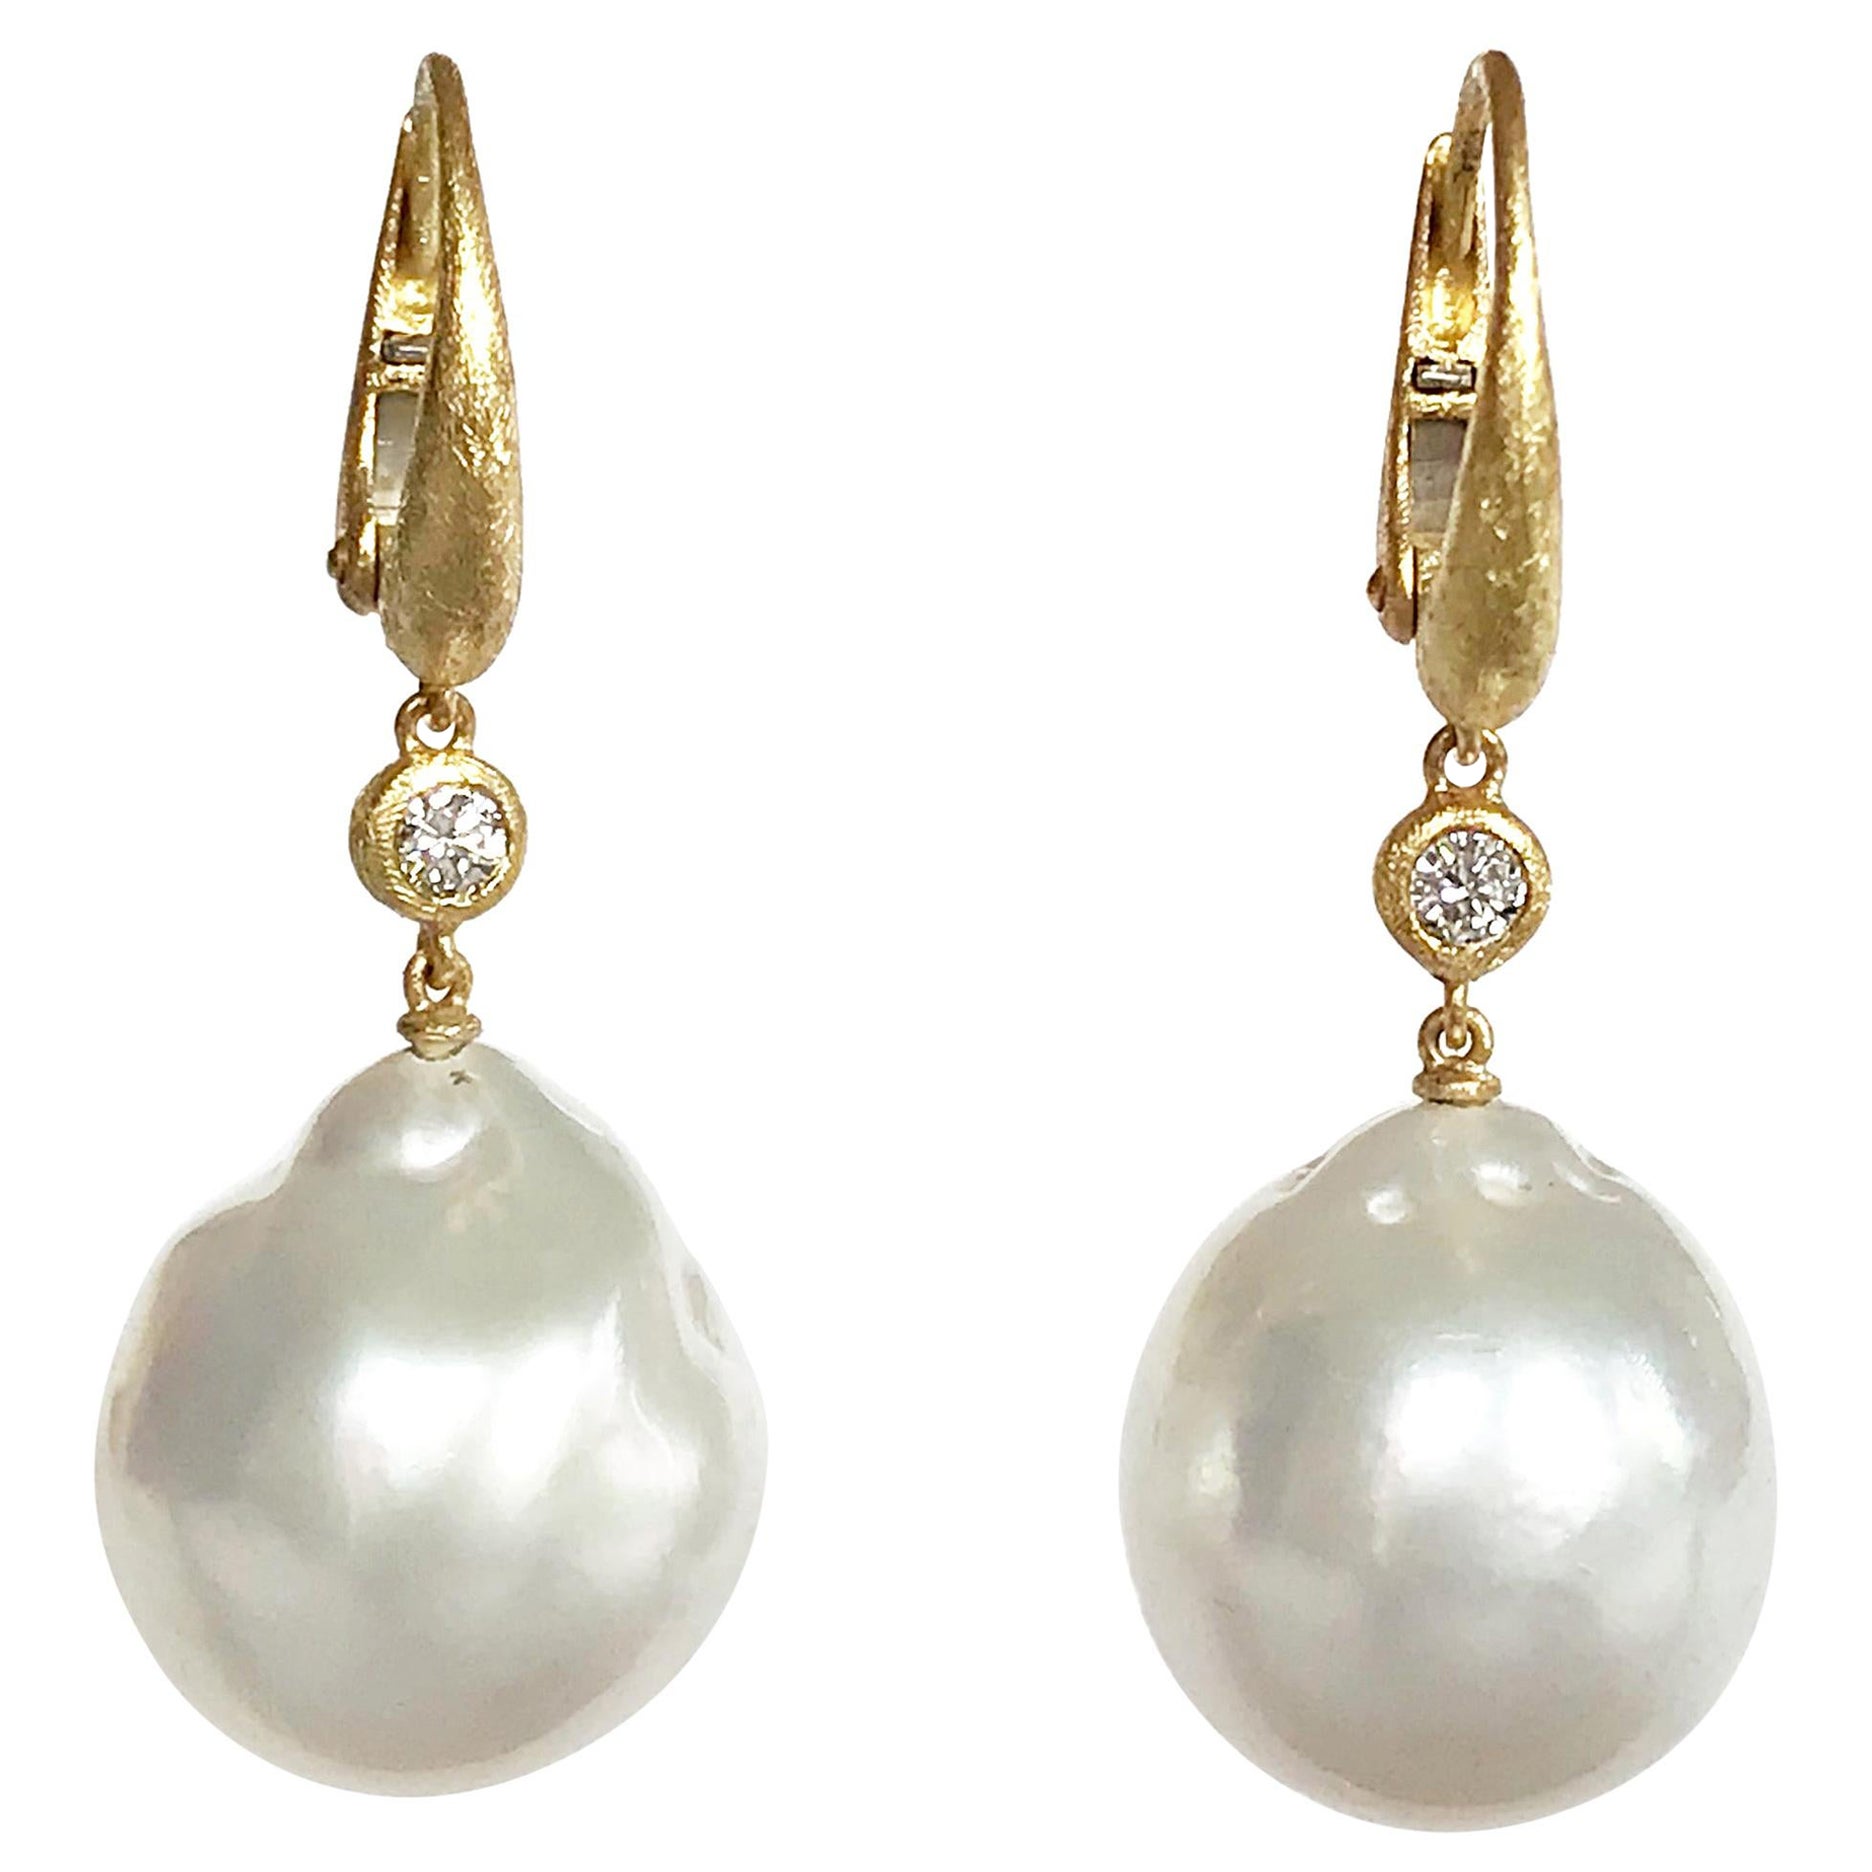 Dalben Design Pendants d'oreilles en or jaune avec perles baroques des mers du Sud et diamants